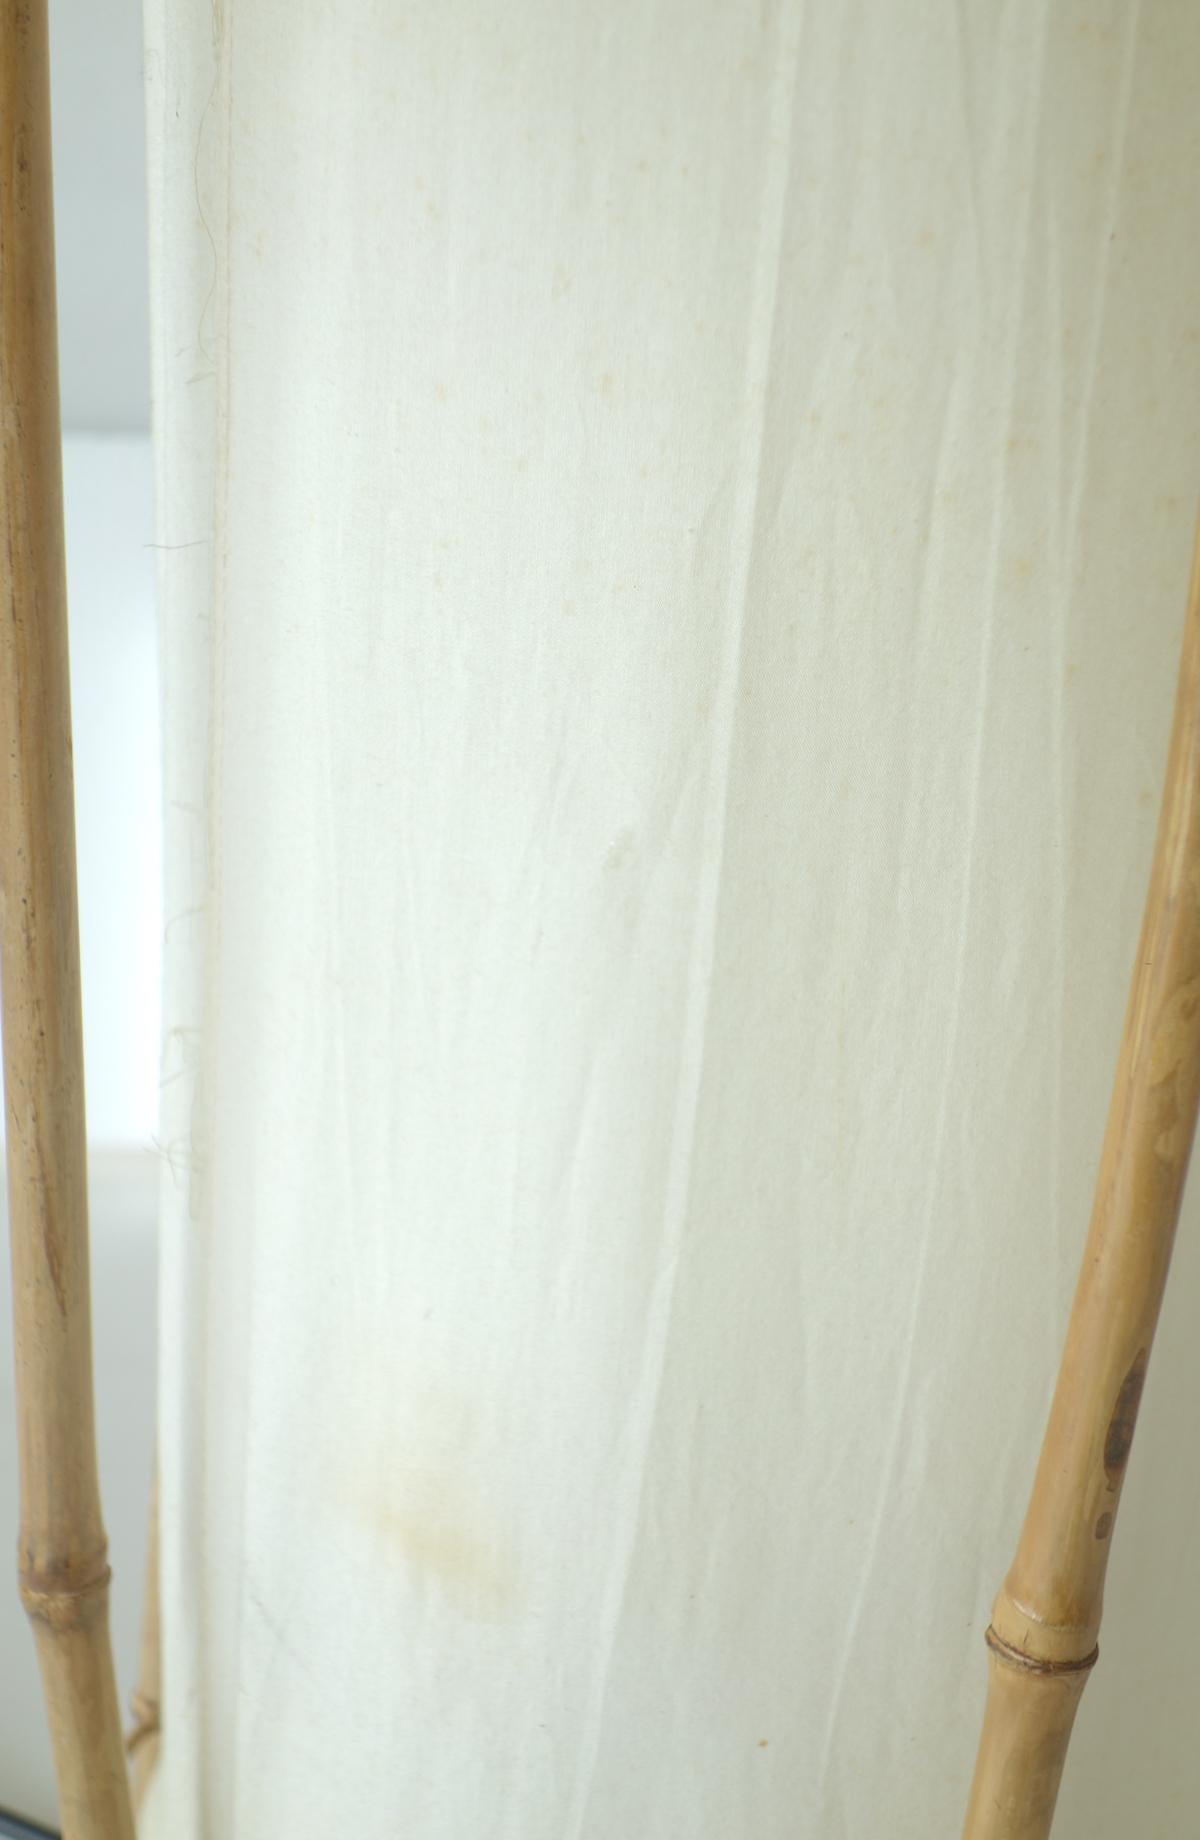 Louis Sognot Stehleuchte aus Bambus
Frankreich, 1960

Sechs Bambusstäbchen 
Zylindrischer Schirm aus Baumwollgewebe

Sehr guter Originalzustand mit kleinen Schönheitsfehlern und Gebrauchsspuren an der Baumwolle.